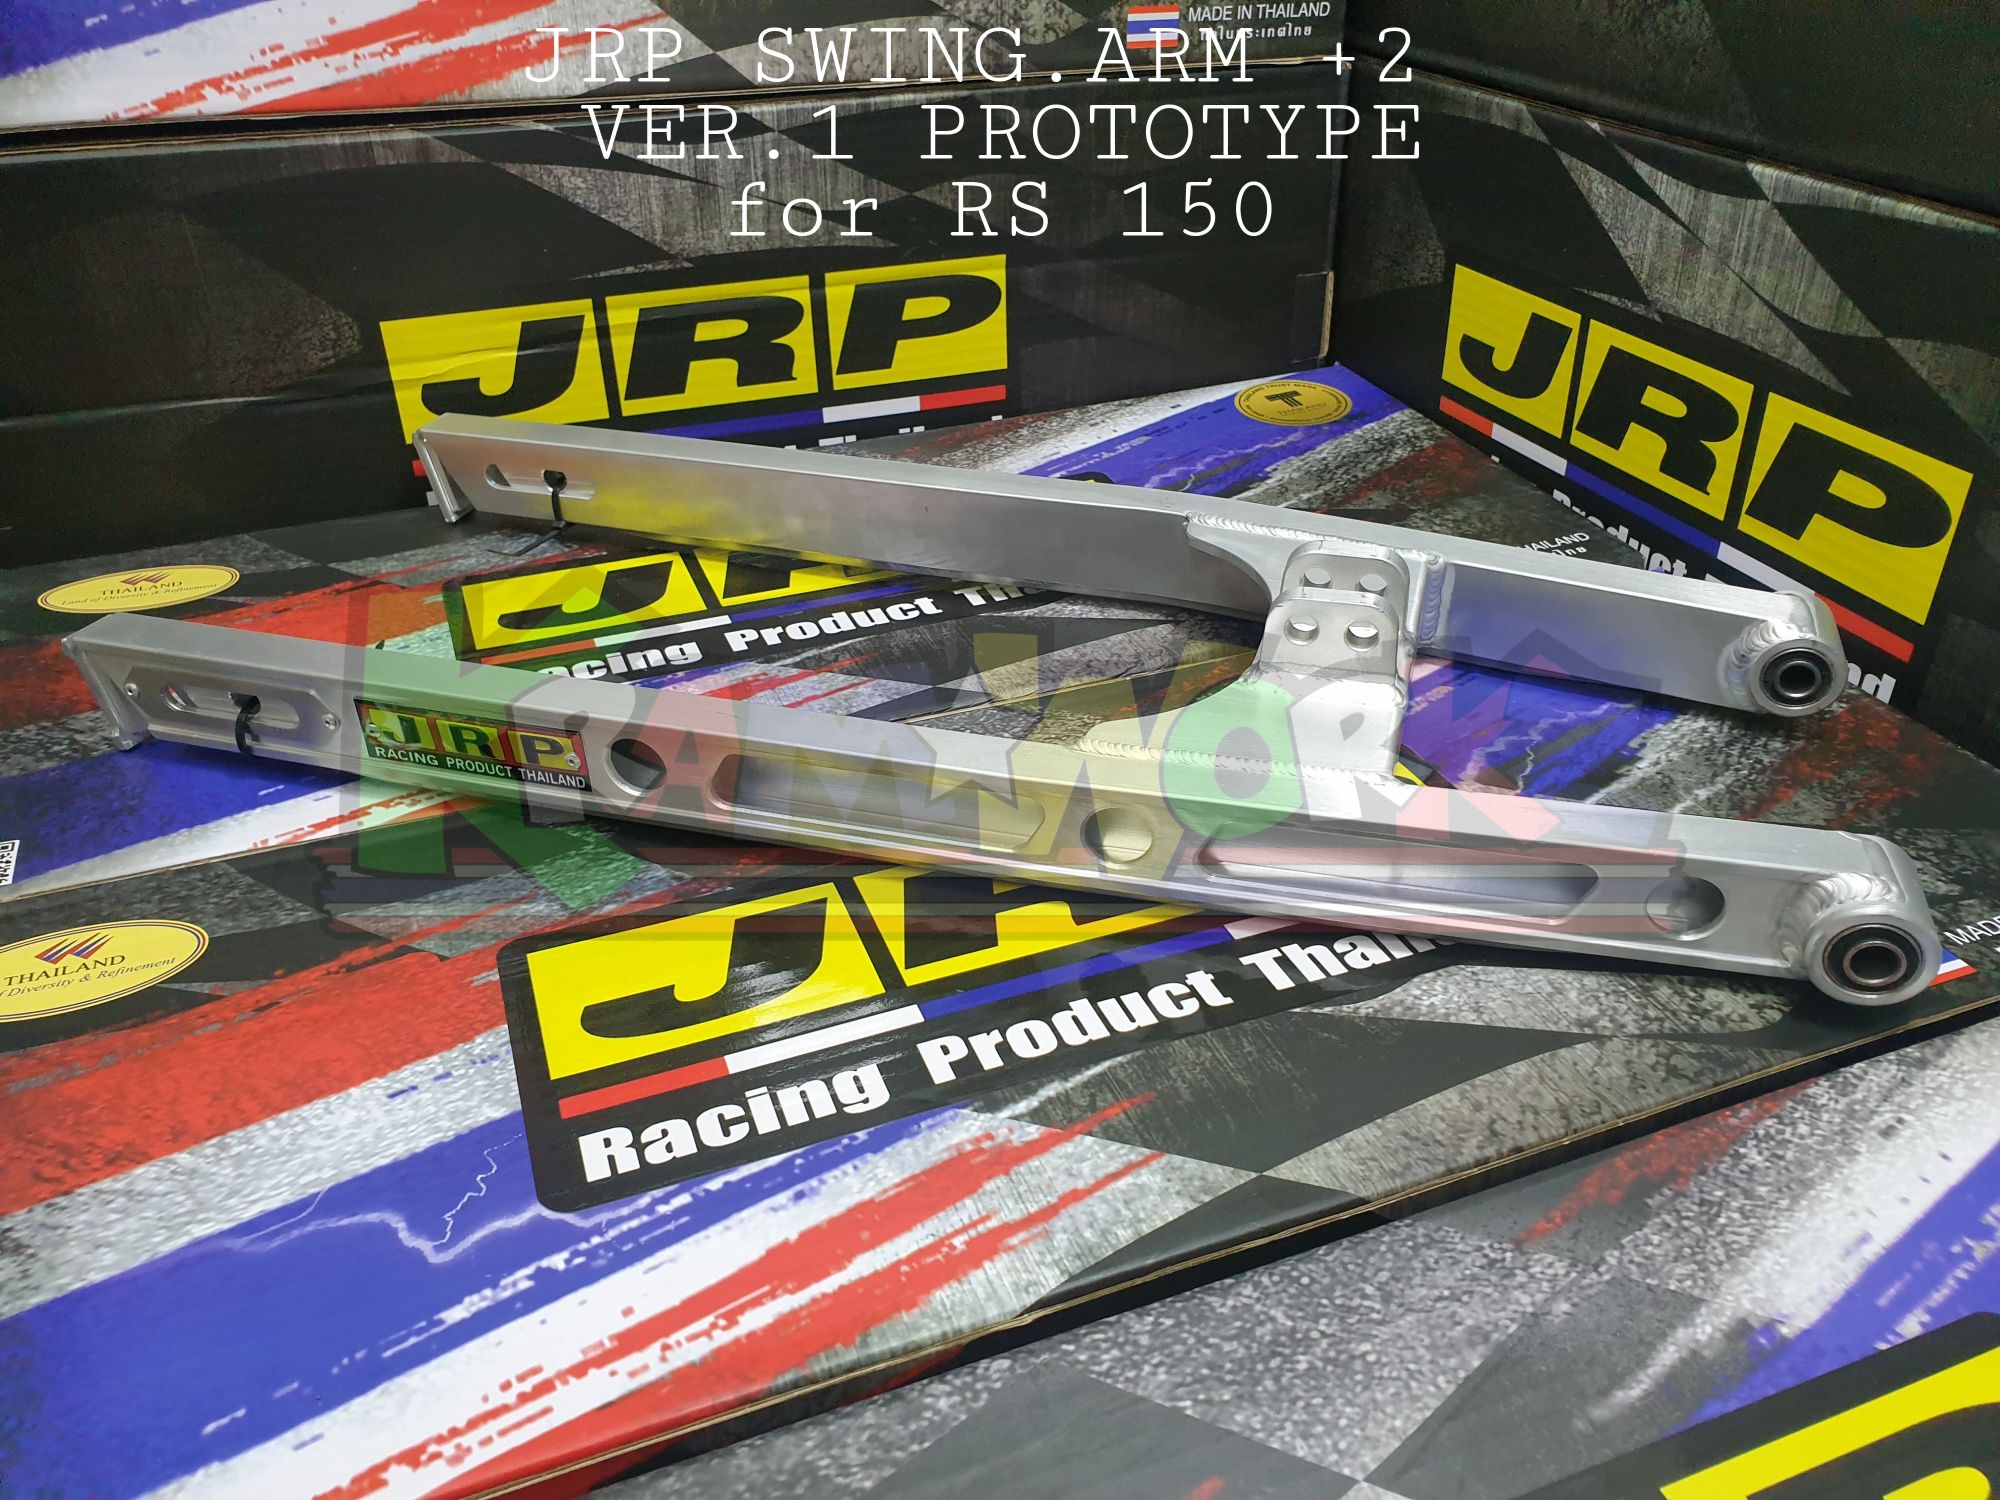 Jrp Swing Arm Prototype Price Voucher Oct 21 Biggo Philippines